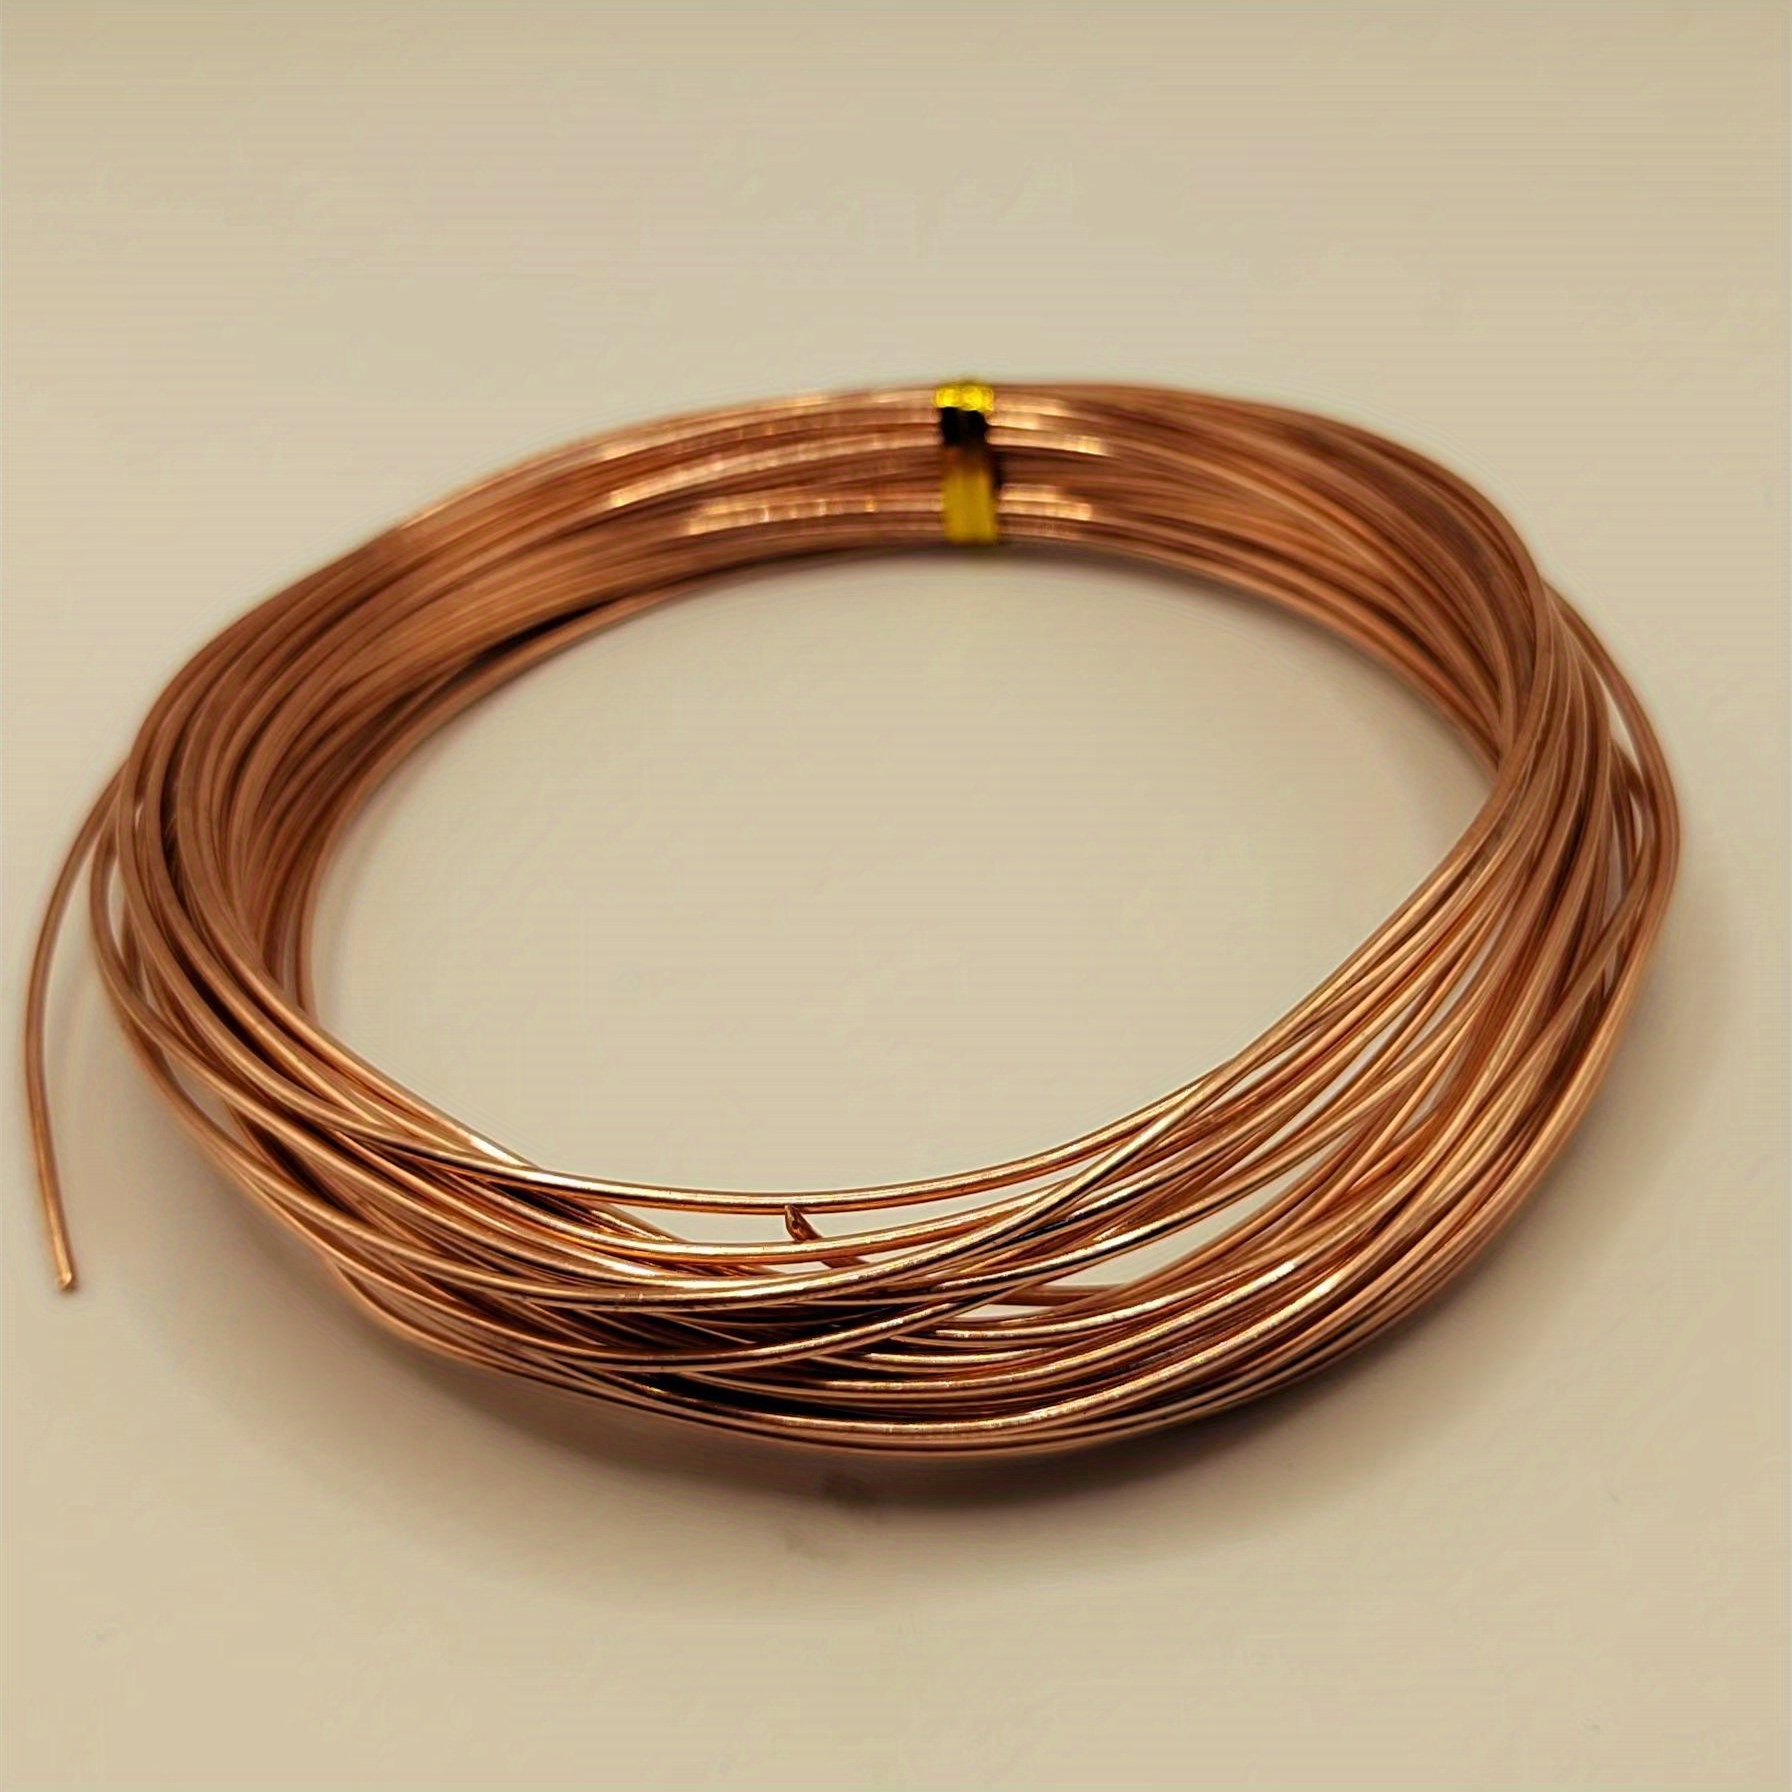 12 Gauge Copper Wire Dead Soft Coil Pure Round Copper Wire 10 ft